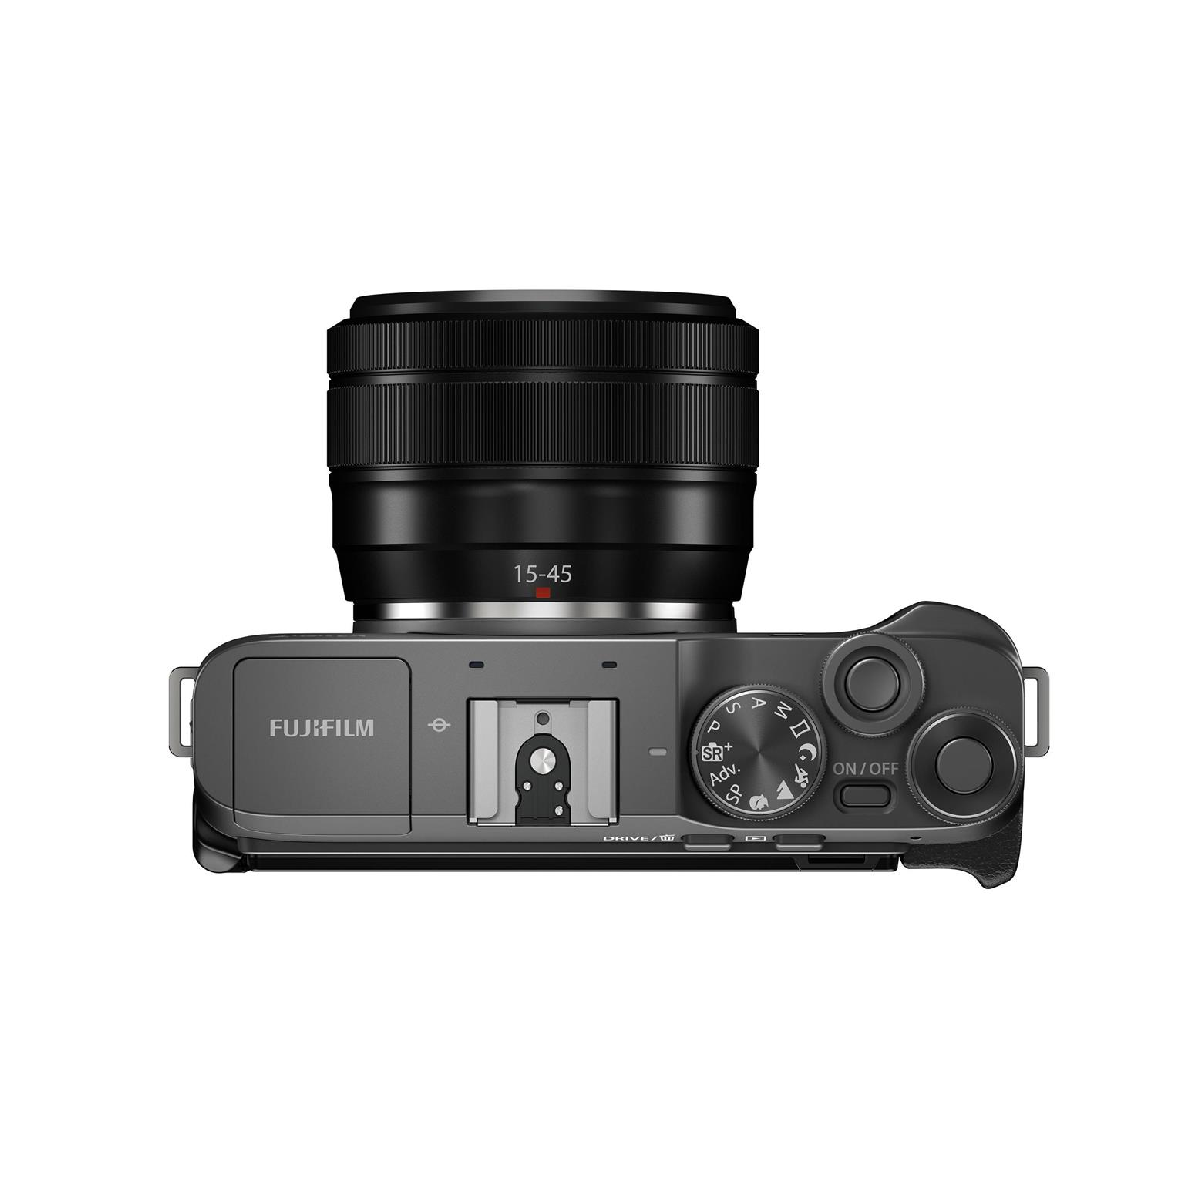 फुजीफिल्म एक्स ए7 मिररलेस डिजिटल कैमरा डार्क सिल्वर